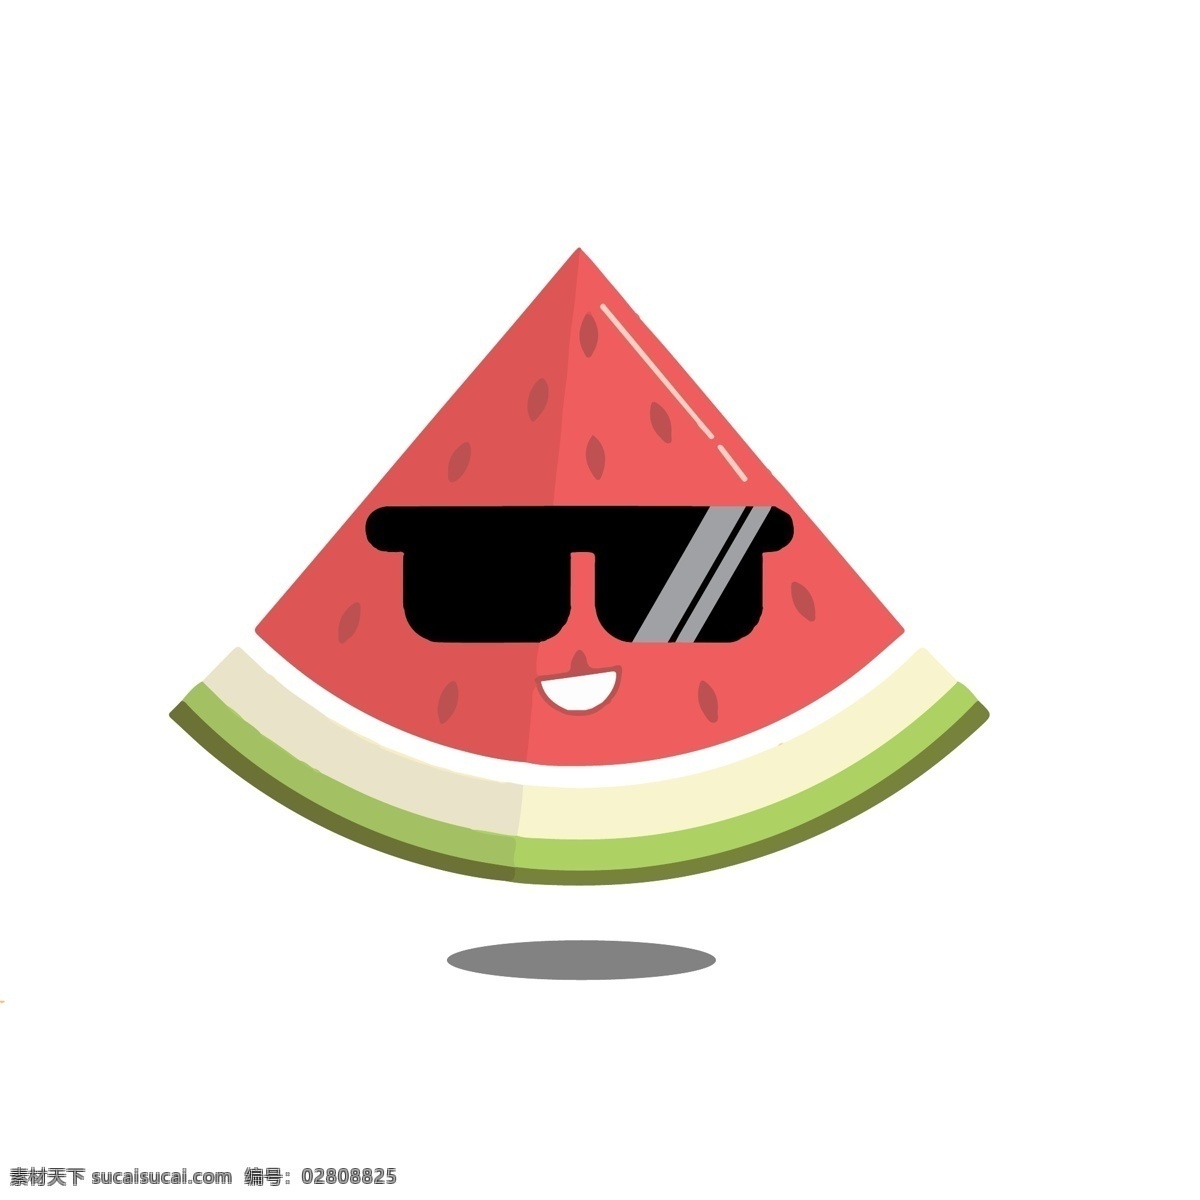 夏季 食物 系列 帅气 西瓜 仔 装饰 插画 美味 水果 墨镜 切开的西瓜 卡通 卡通水果 帅气水果 帅气的 简笔画 解暑